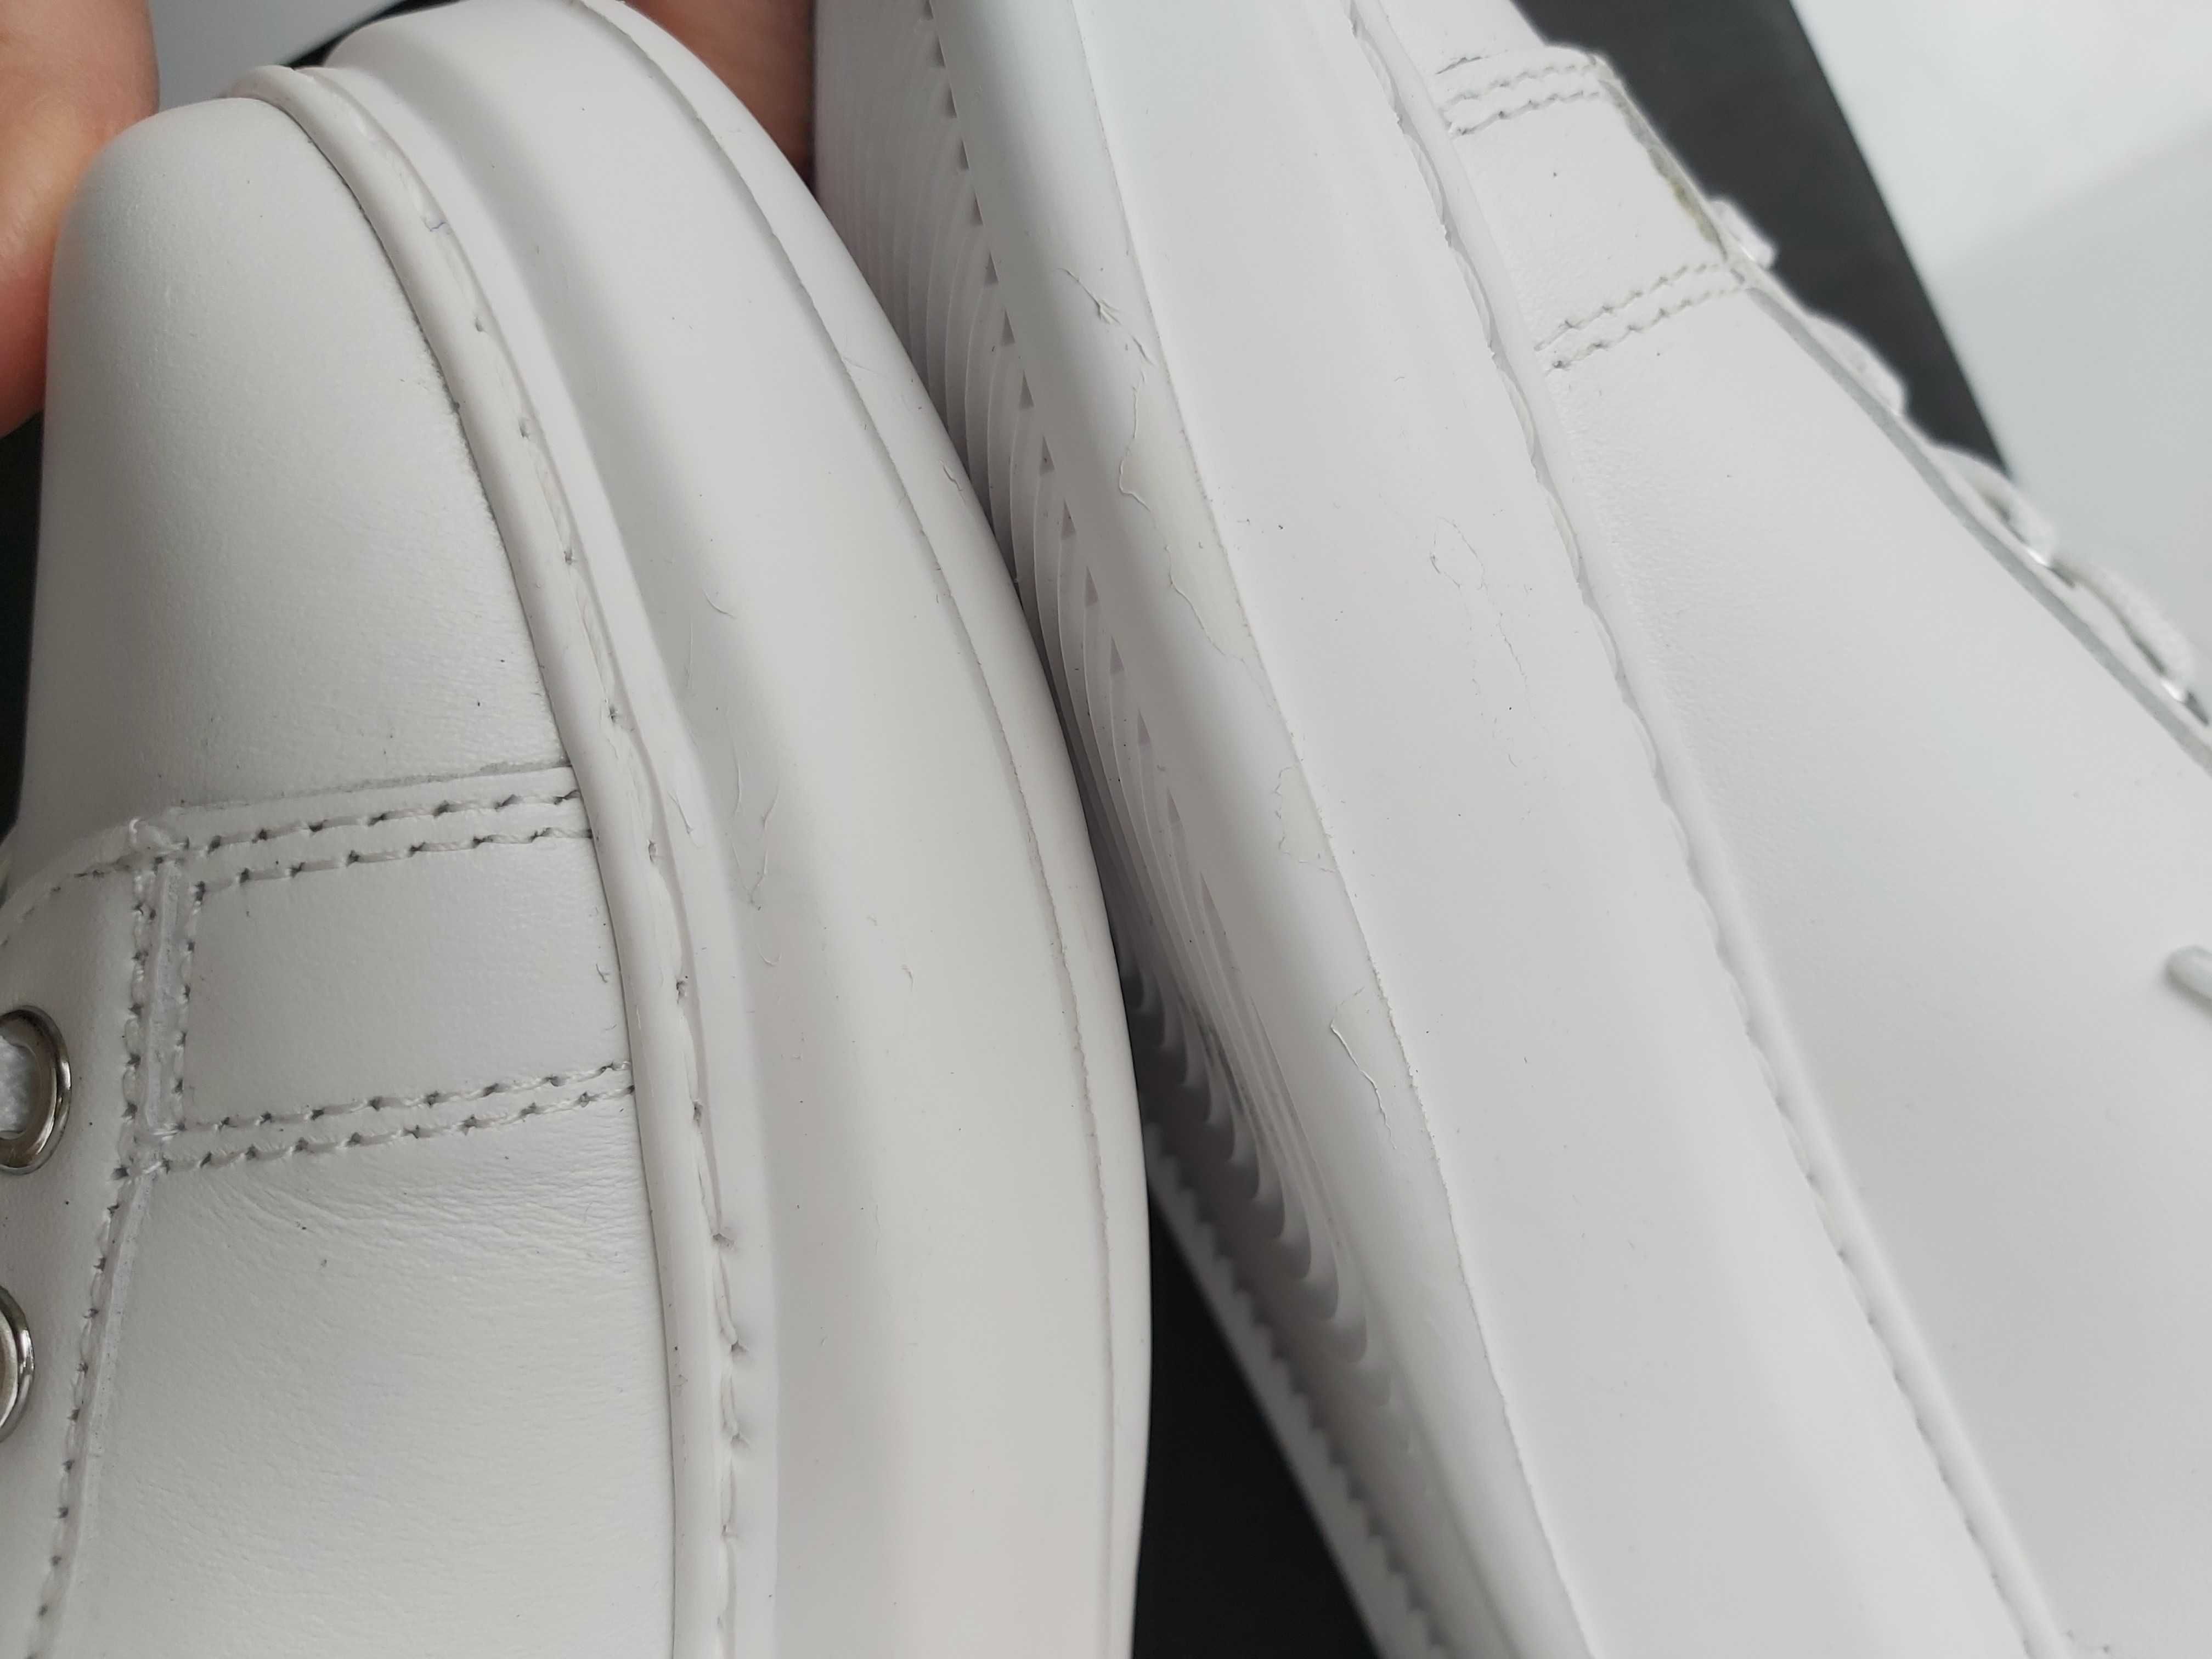 NOWE sneakersy KARL LAGERFELD rozmiar 37 tenisówki buty białe skóra